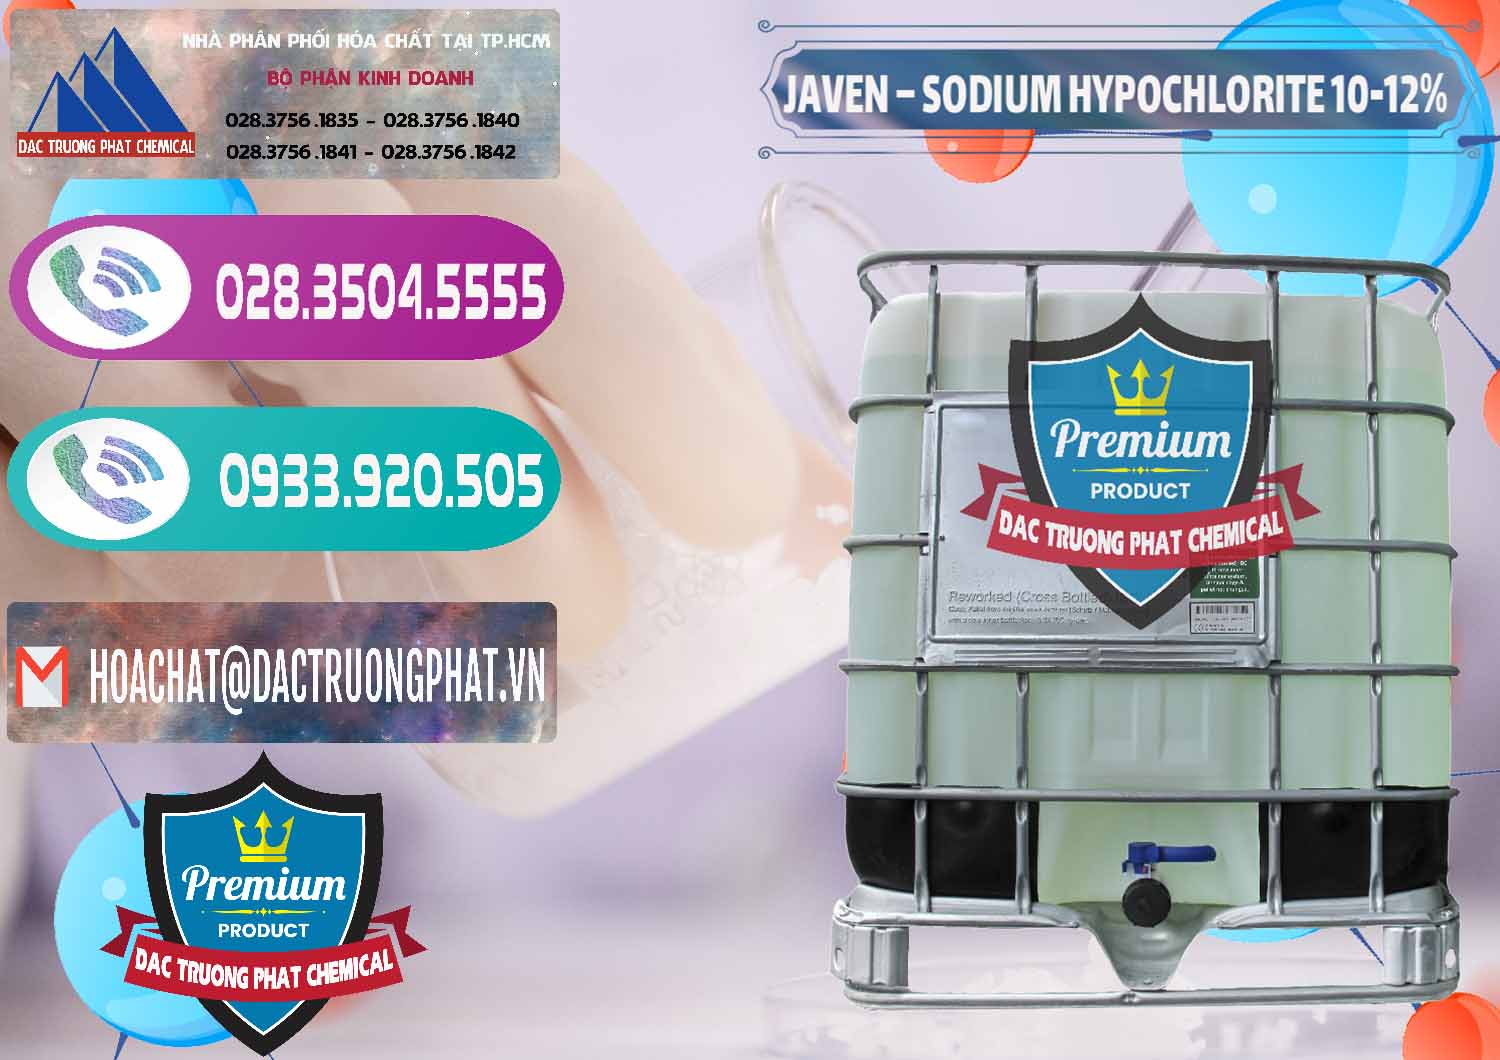 Cty cung cấp _ phân phối Javen - Sodium Hypochlorite 10-12% Việt Nam - 0188 - Đơn vị chuyên phân phối - bán hóa chất tại TP.HCM - hoachatxulynuoc.com